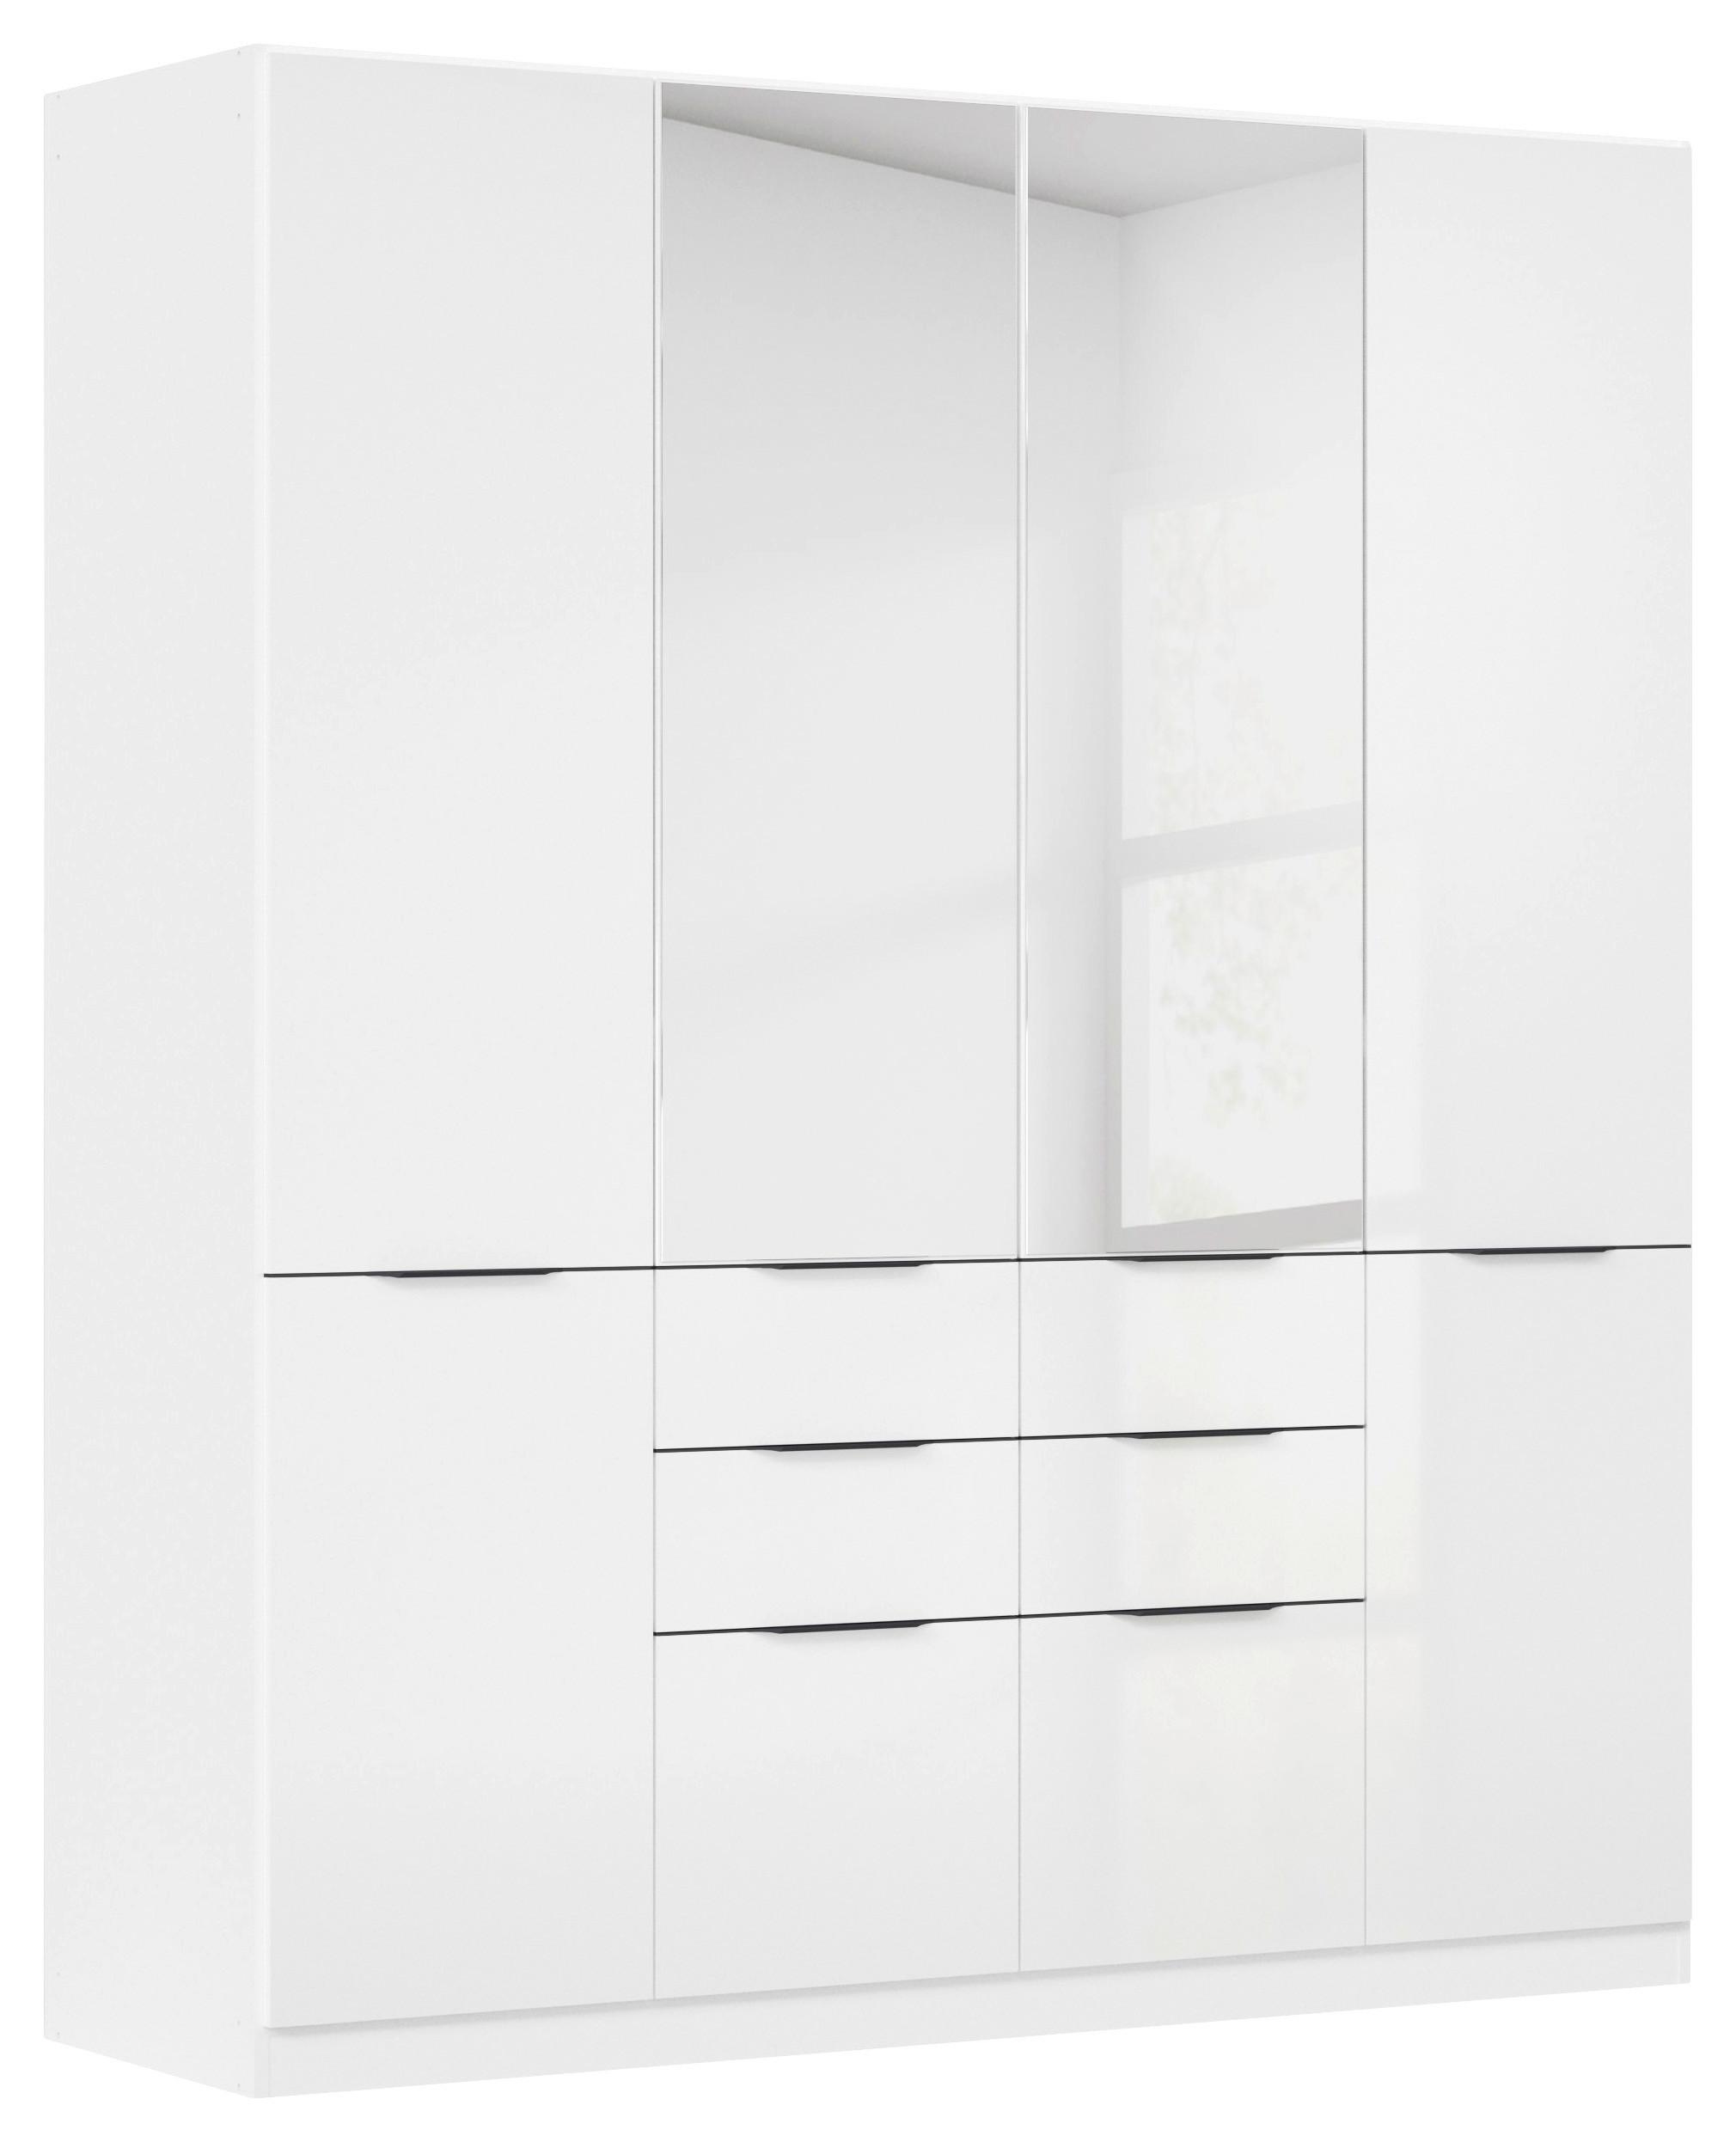 Drehtürenschrank Max in Weiß ca. 181x210x54cm - Weiß Hochglanz/Weiß, KONVENTIONELL, Holzwerkstoff/Kunststoff (181/210/54cm) - Modern Living